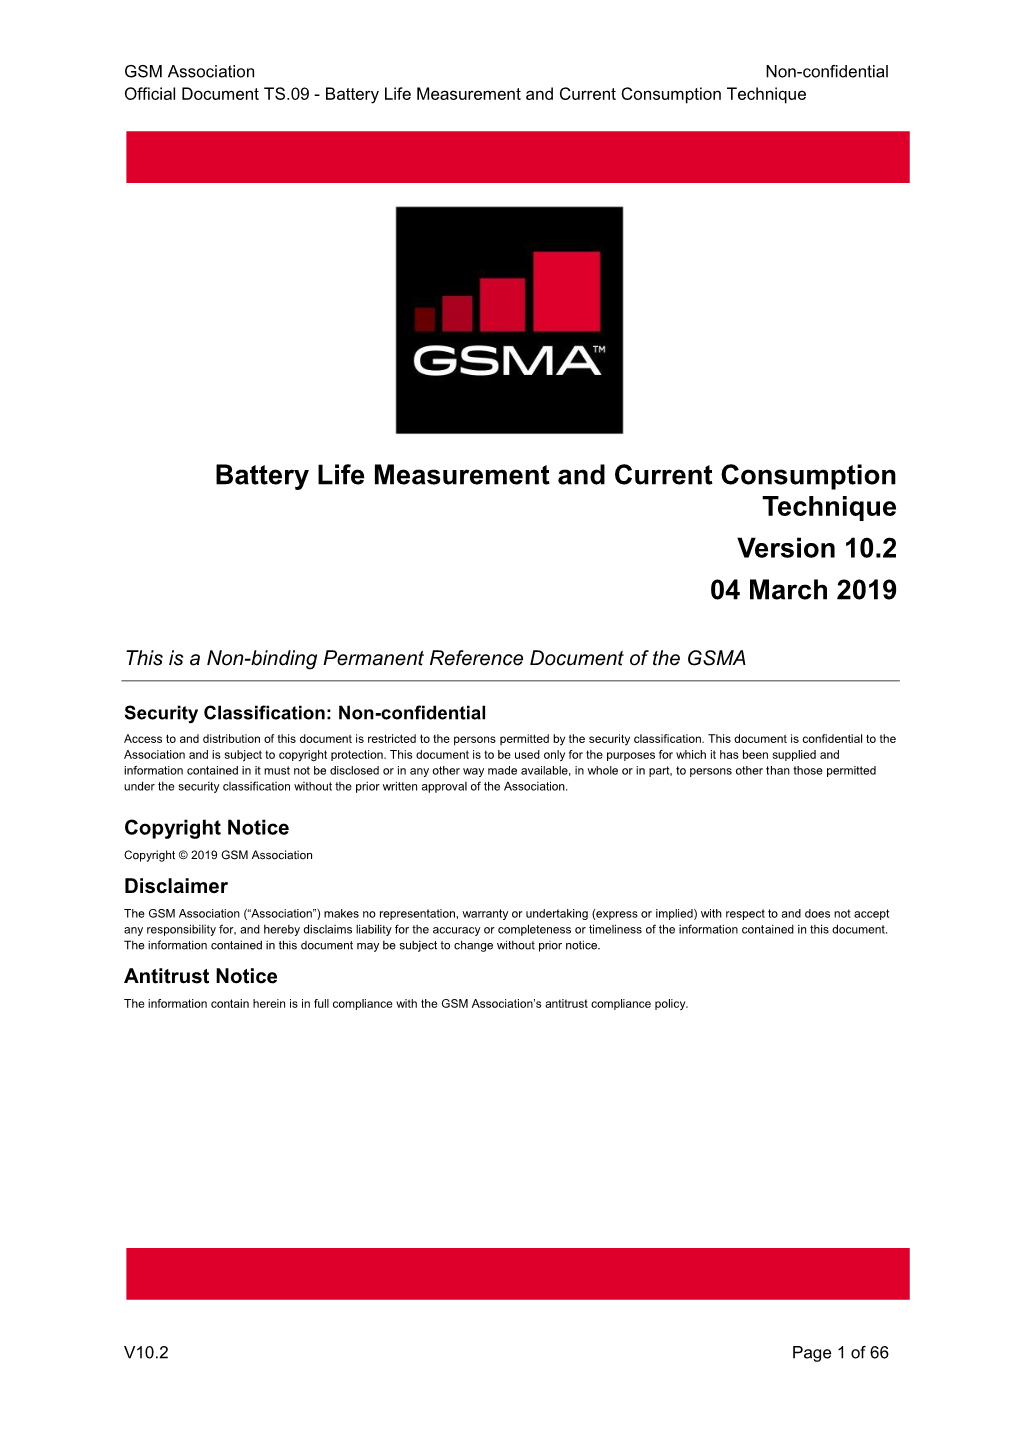 Battery Life Measurement and Current Consumption Technique